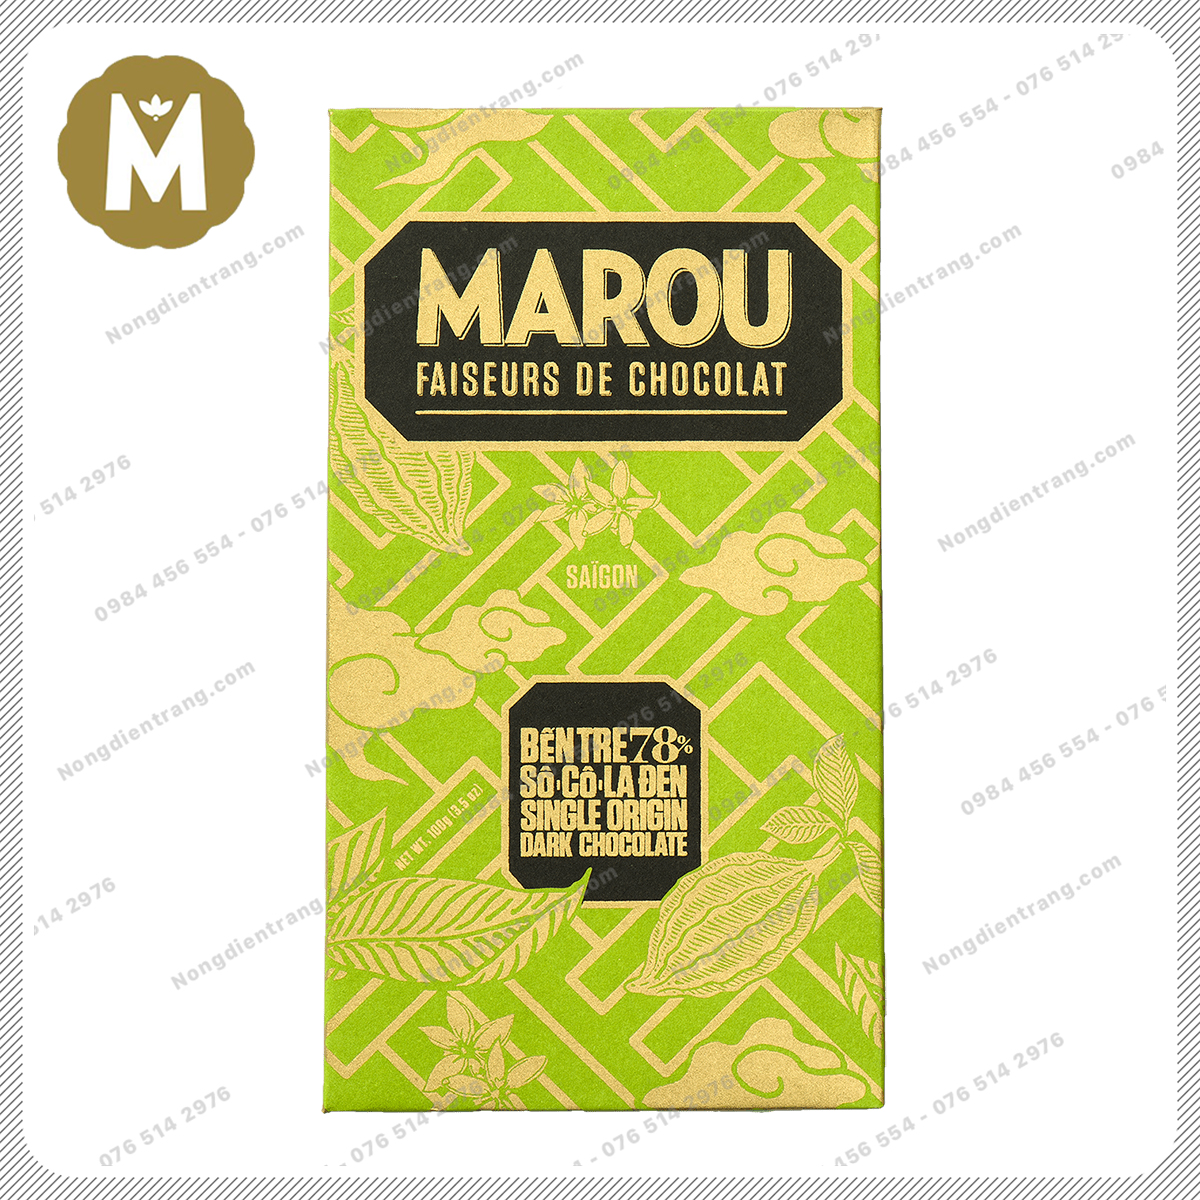 Marou Chocolate Ben Tre 78% Socola Đen - Socola Marou Bến Tre 78% Cacao